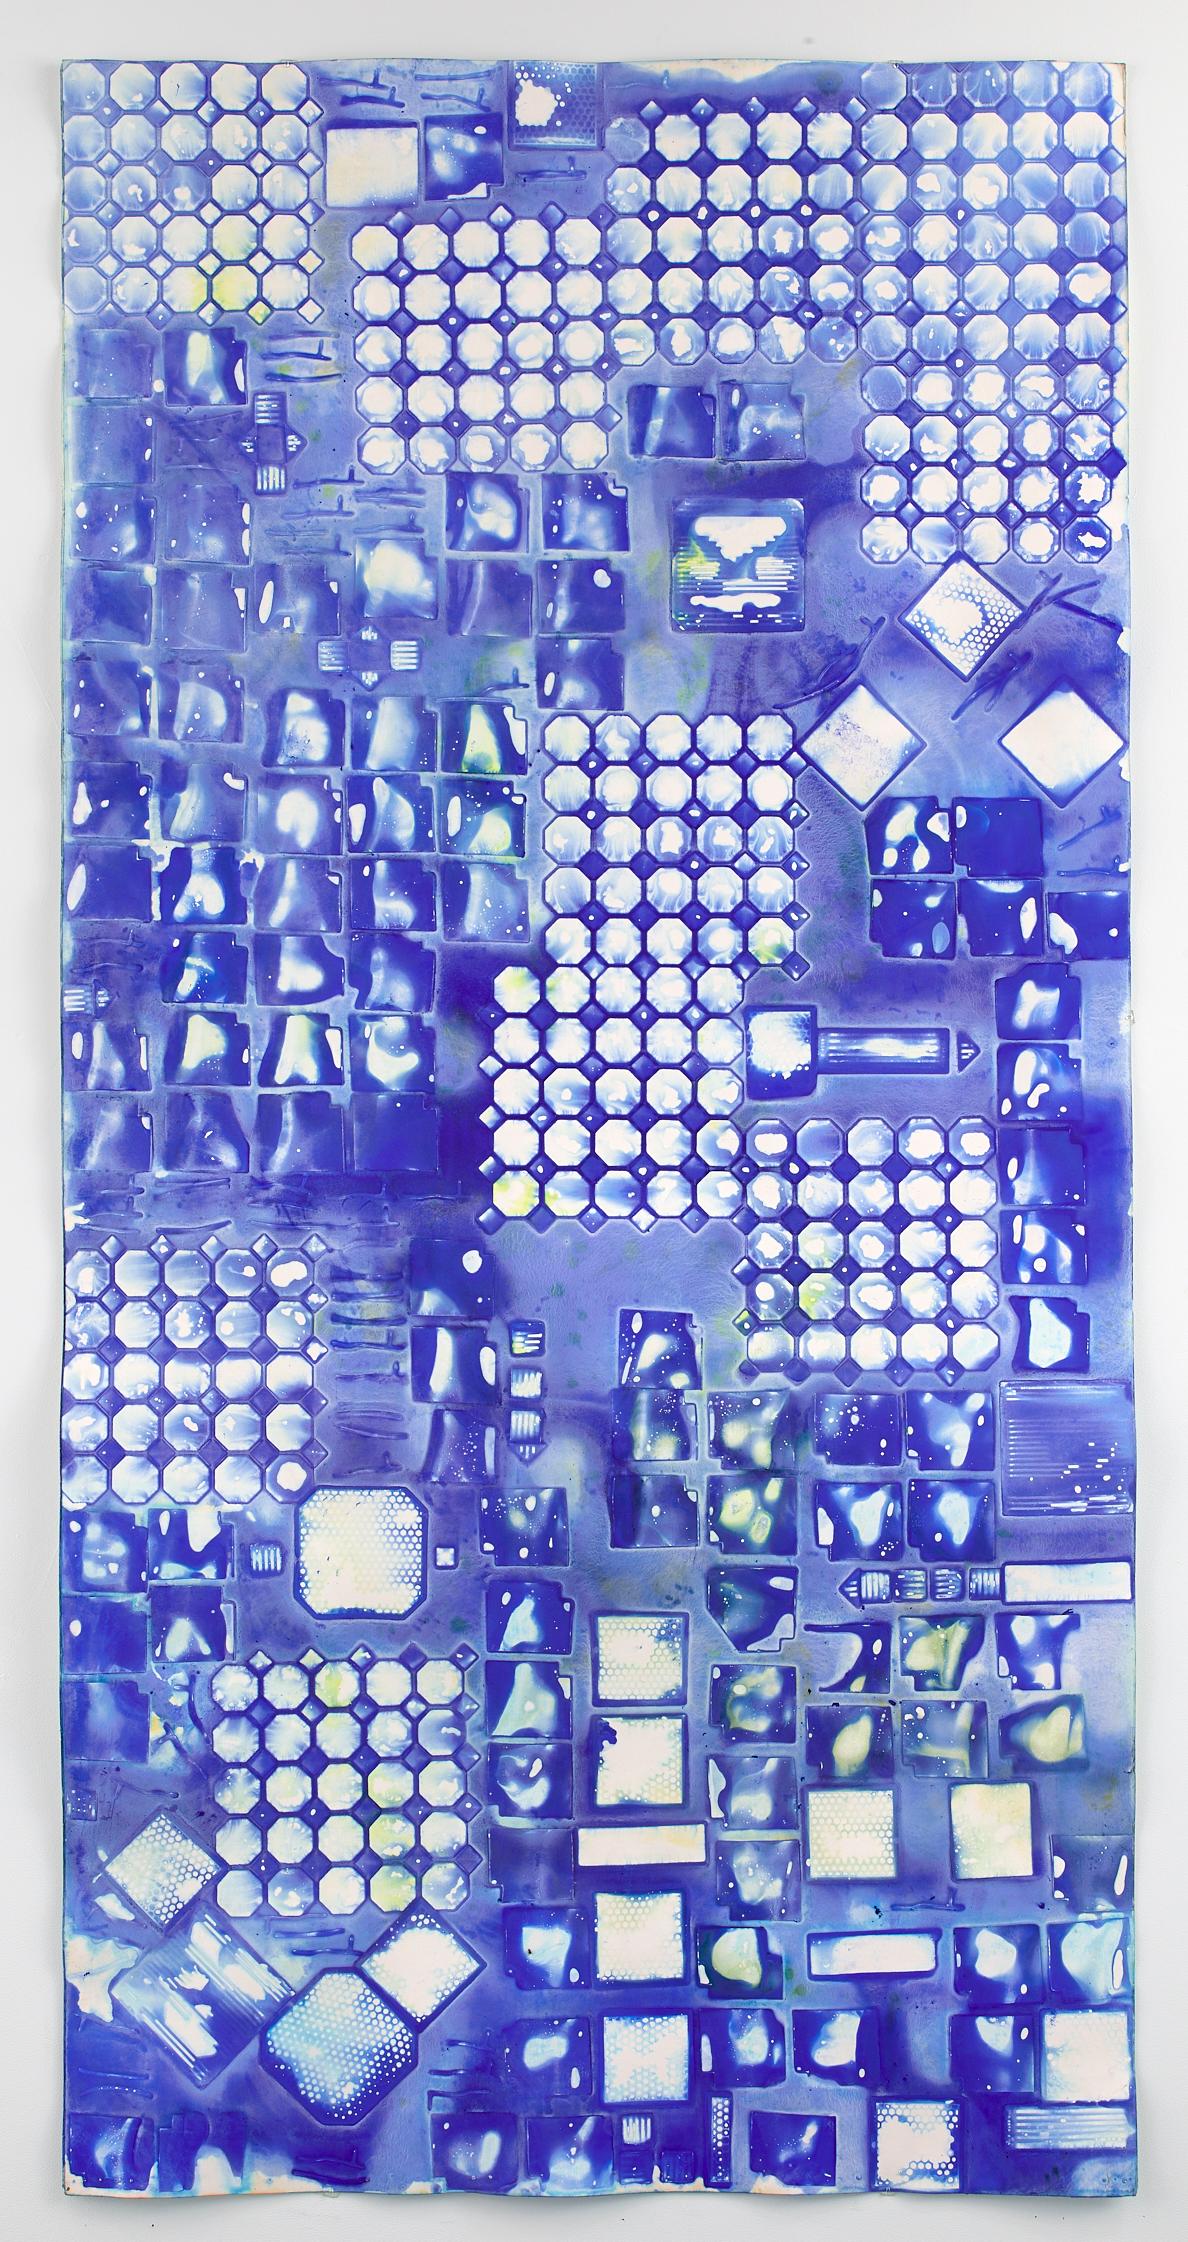 Seeking the Sound of Cobalt Blue est une série de peintures plus grandes sur du carton musée 8 plis et de grandes feuilles de papier chiffon qui ont été créées depuis l'hiver 2016. 

À l'aide de matériaux de construction domestiques provenant de son